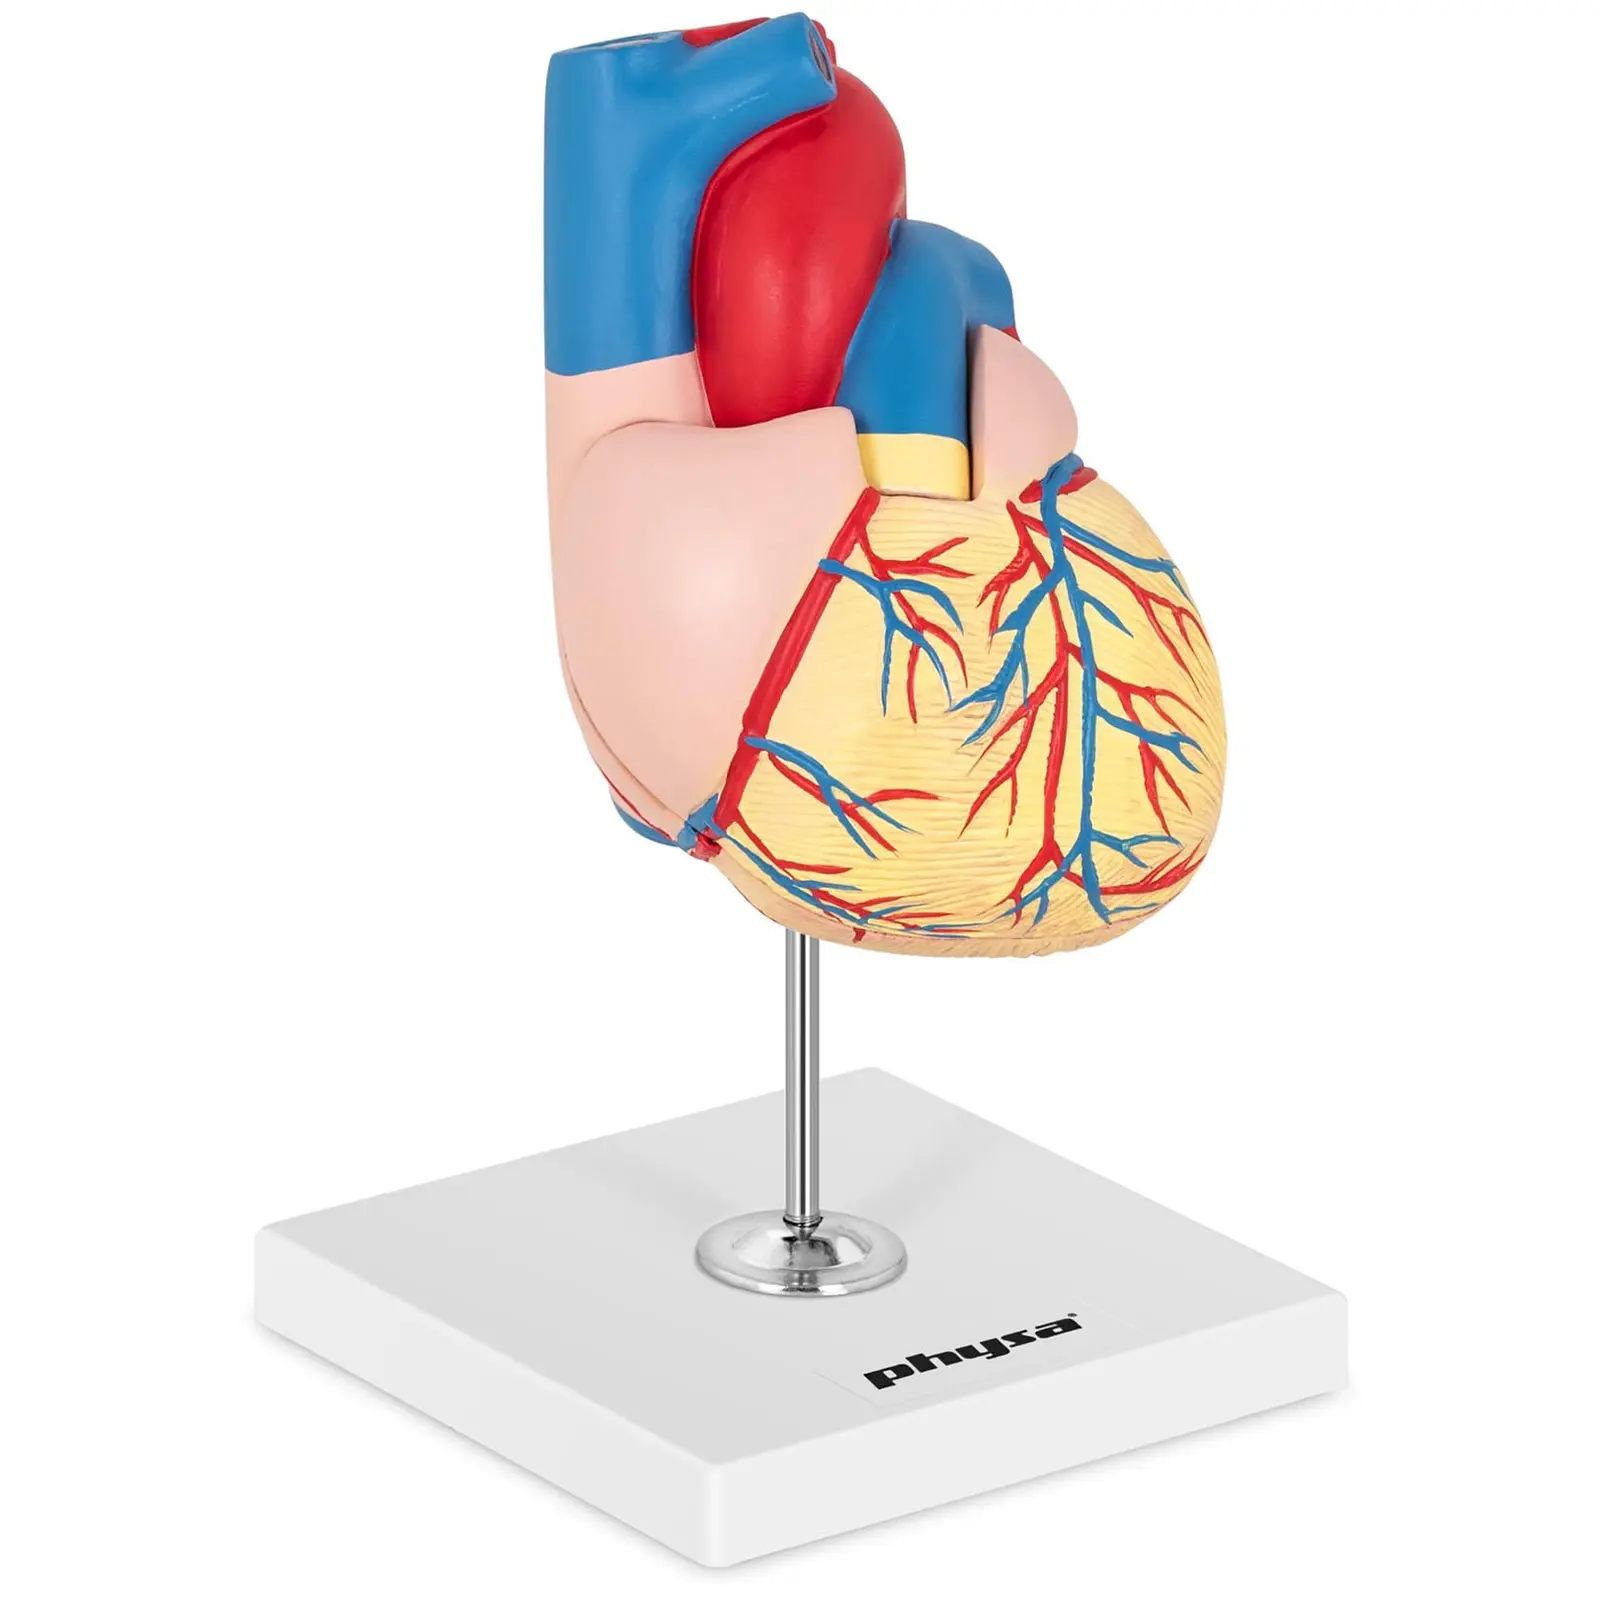 Anatominen malli - sydän - jakautuu 2 osaan - luonnollinen koko